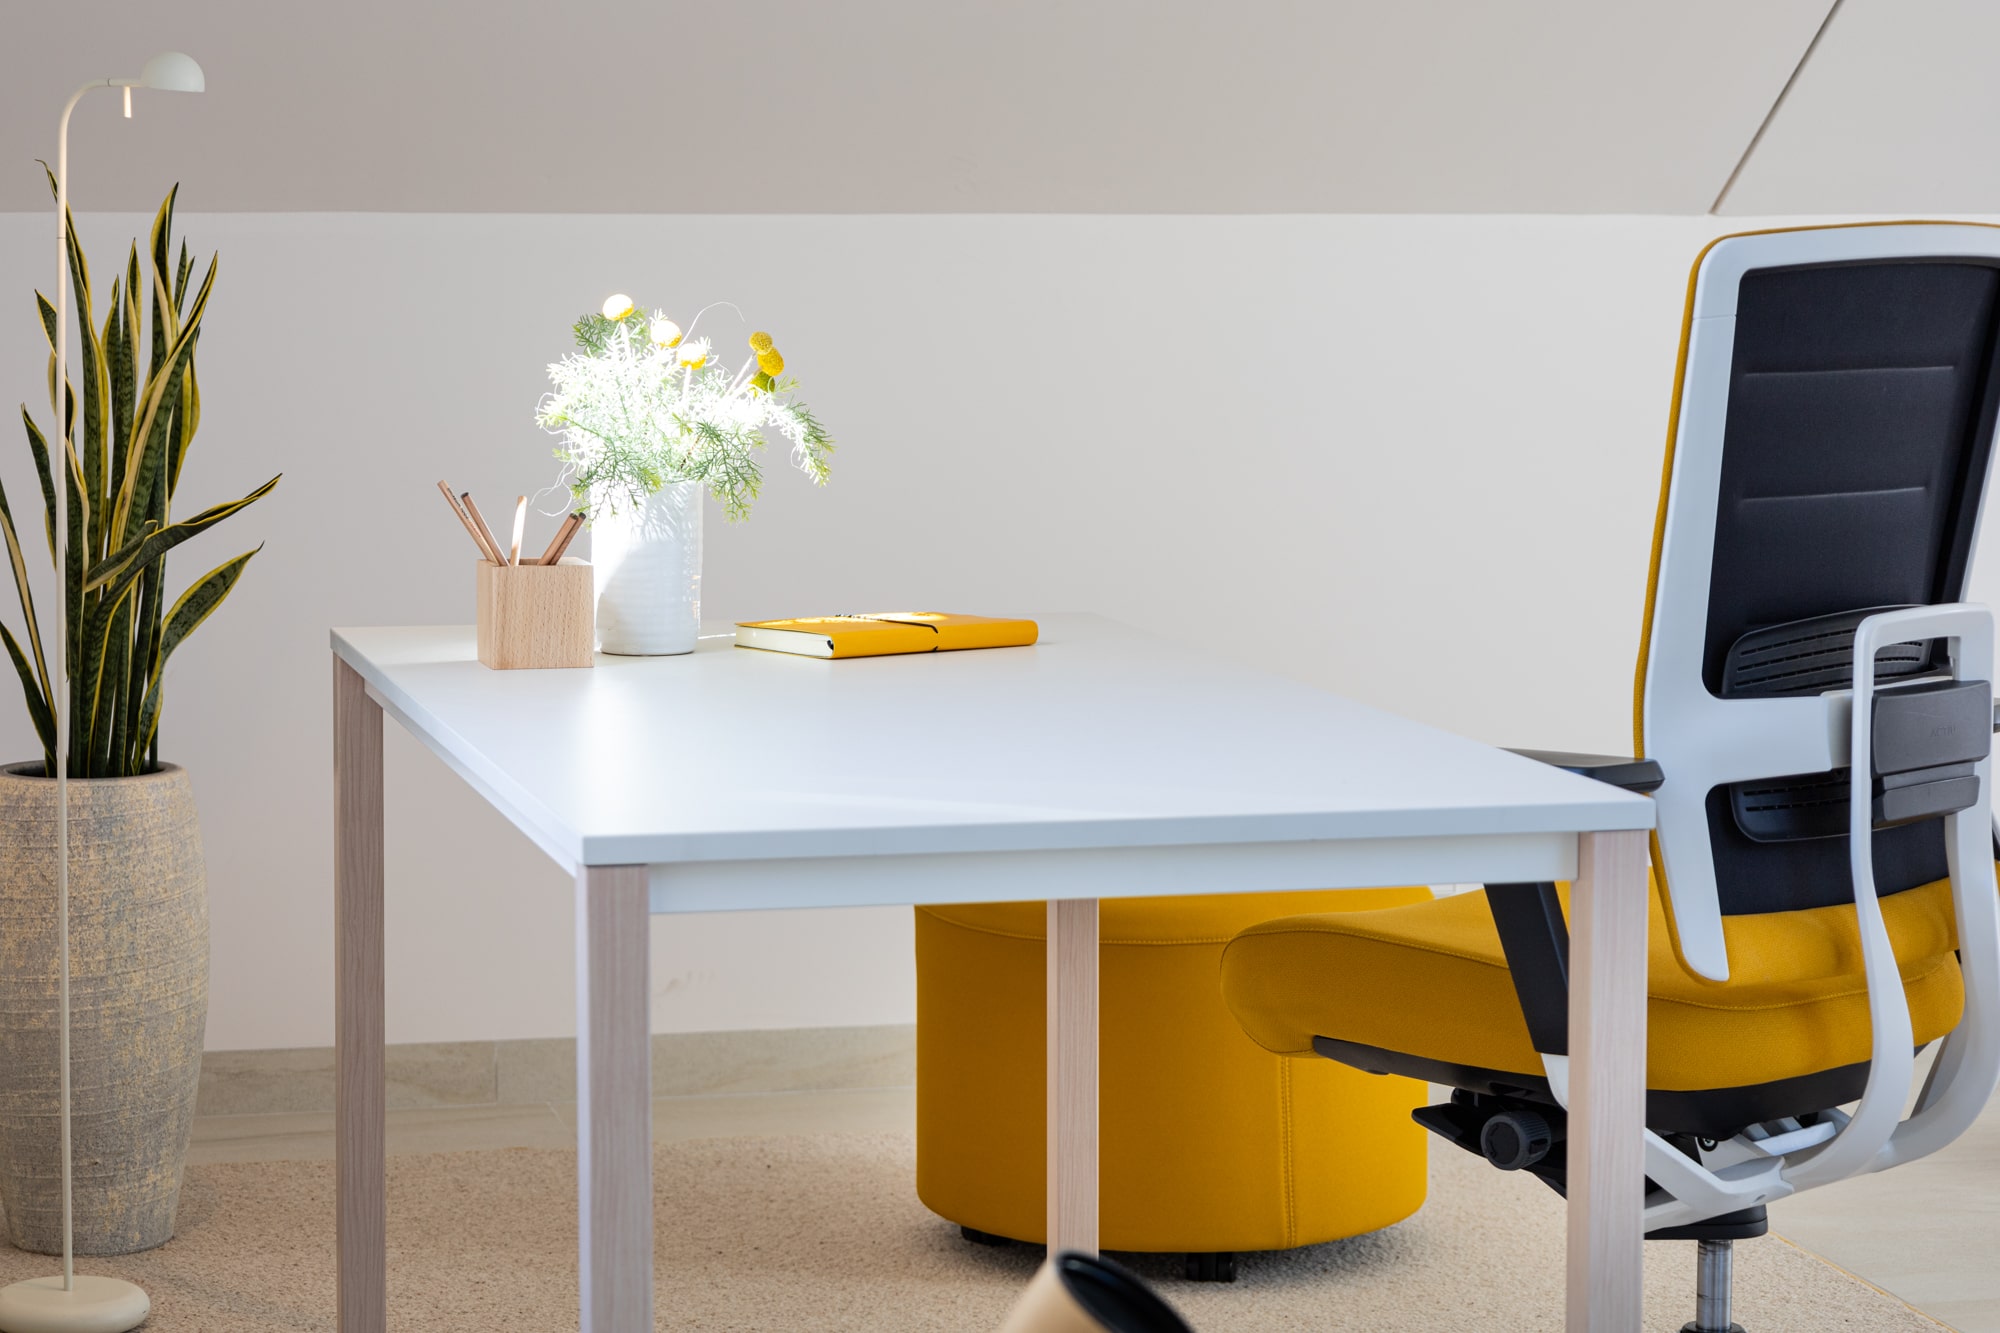 Monta tu oficina en casa con estos muebles y accesorios que vende